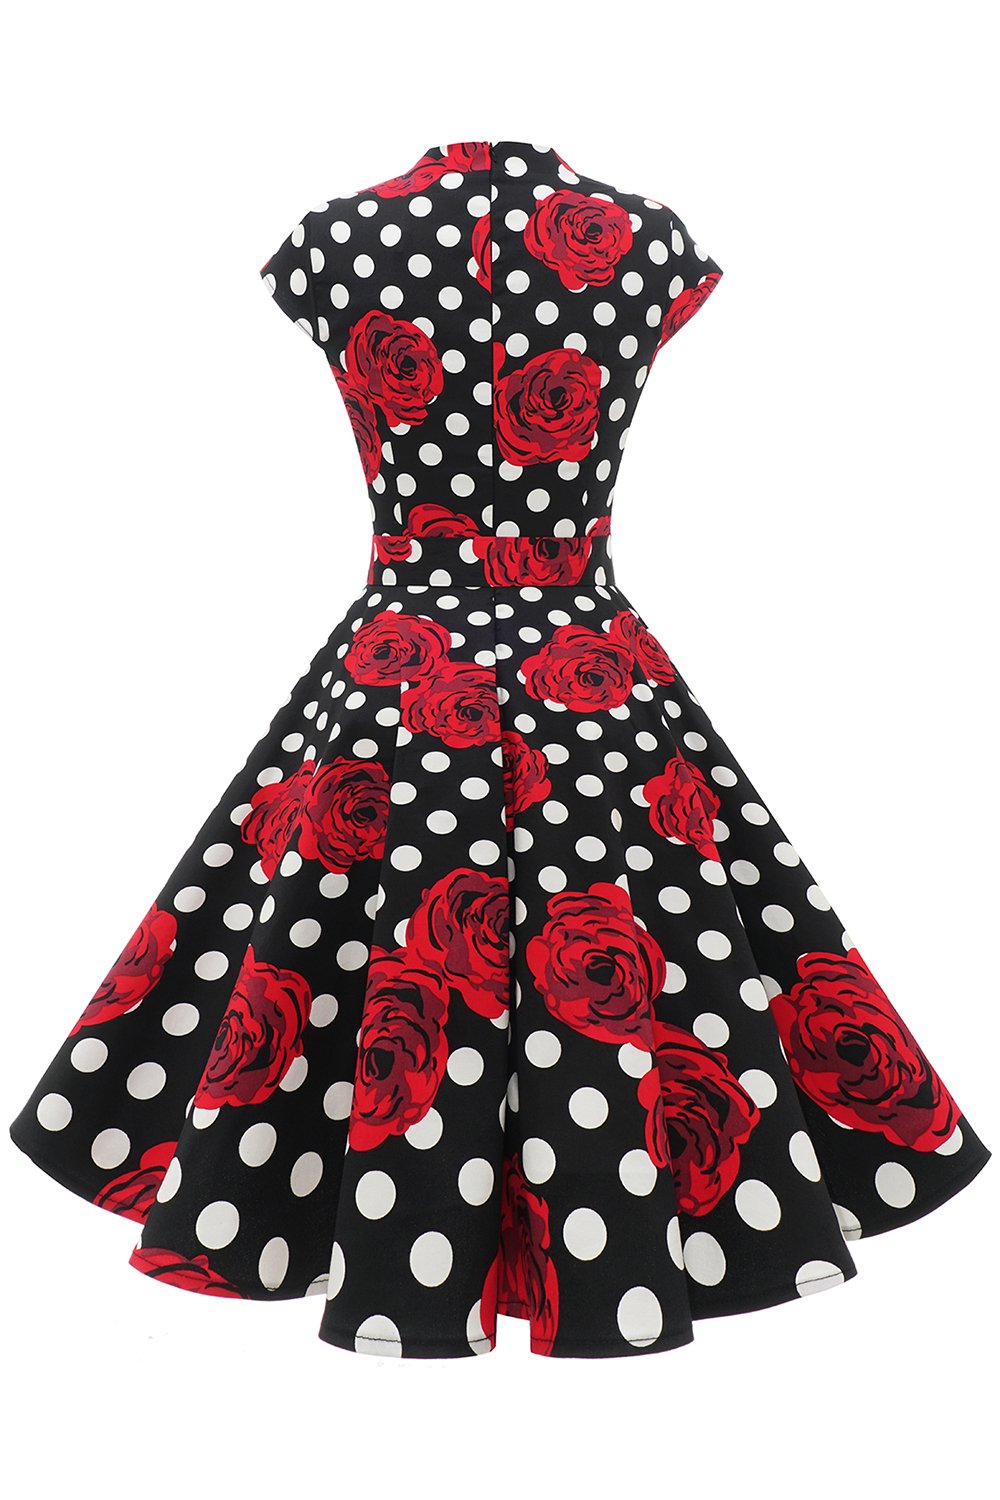 Red Polka Dots Floral Vintage Dress